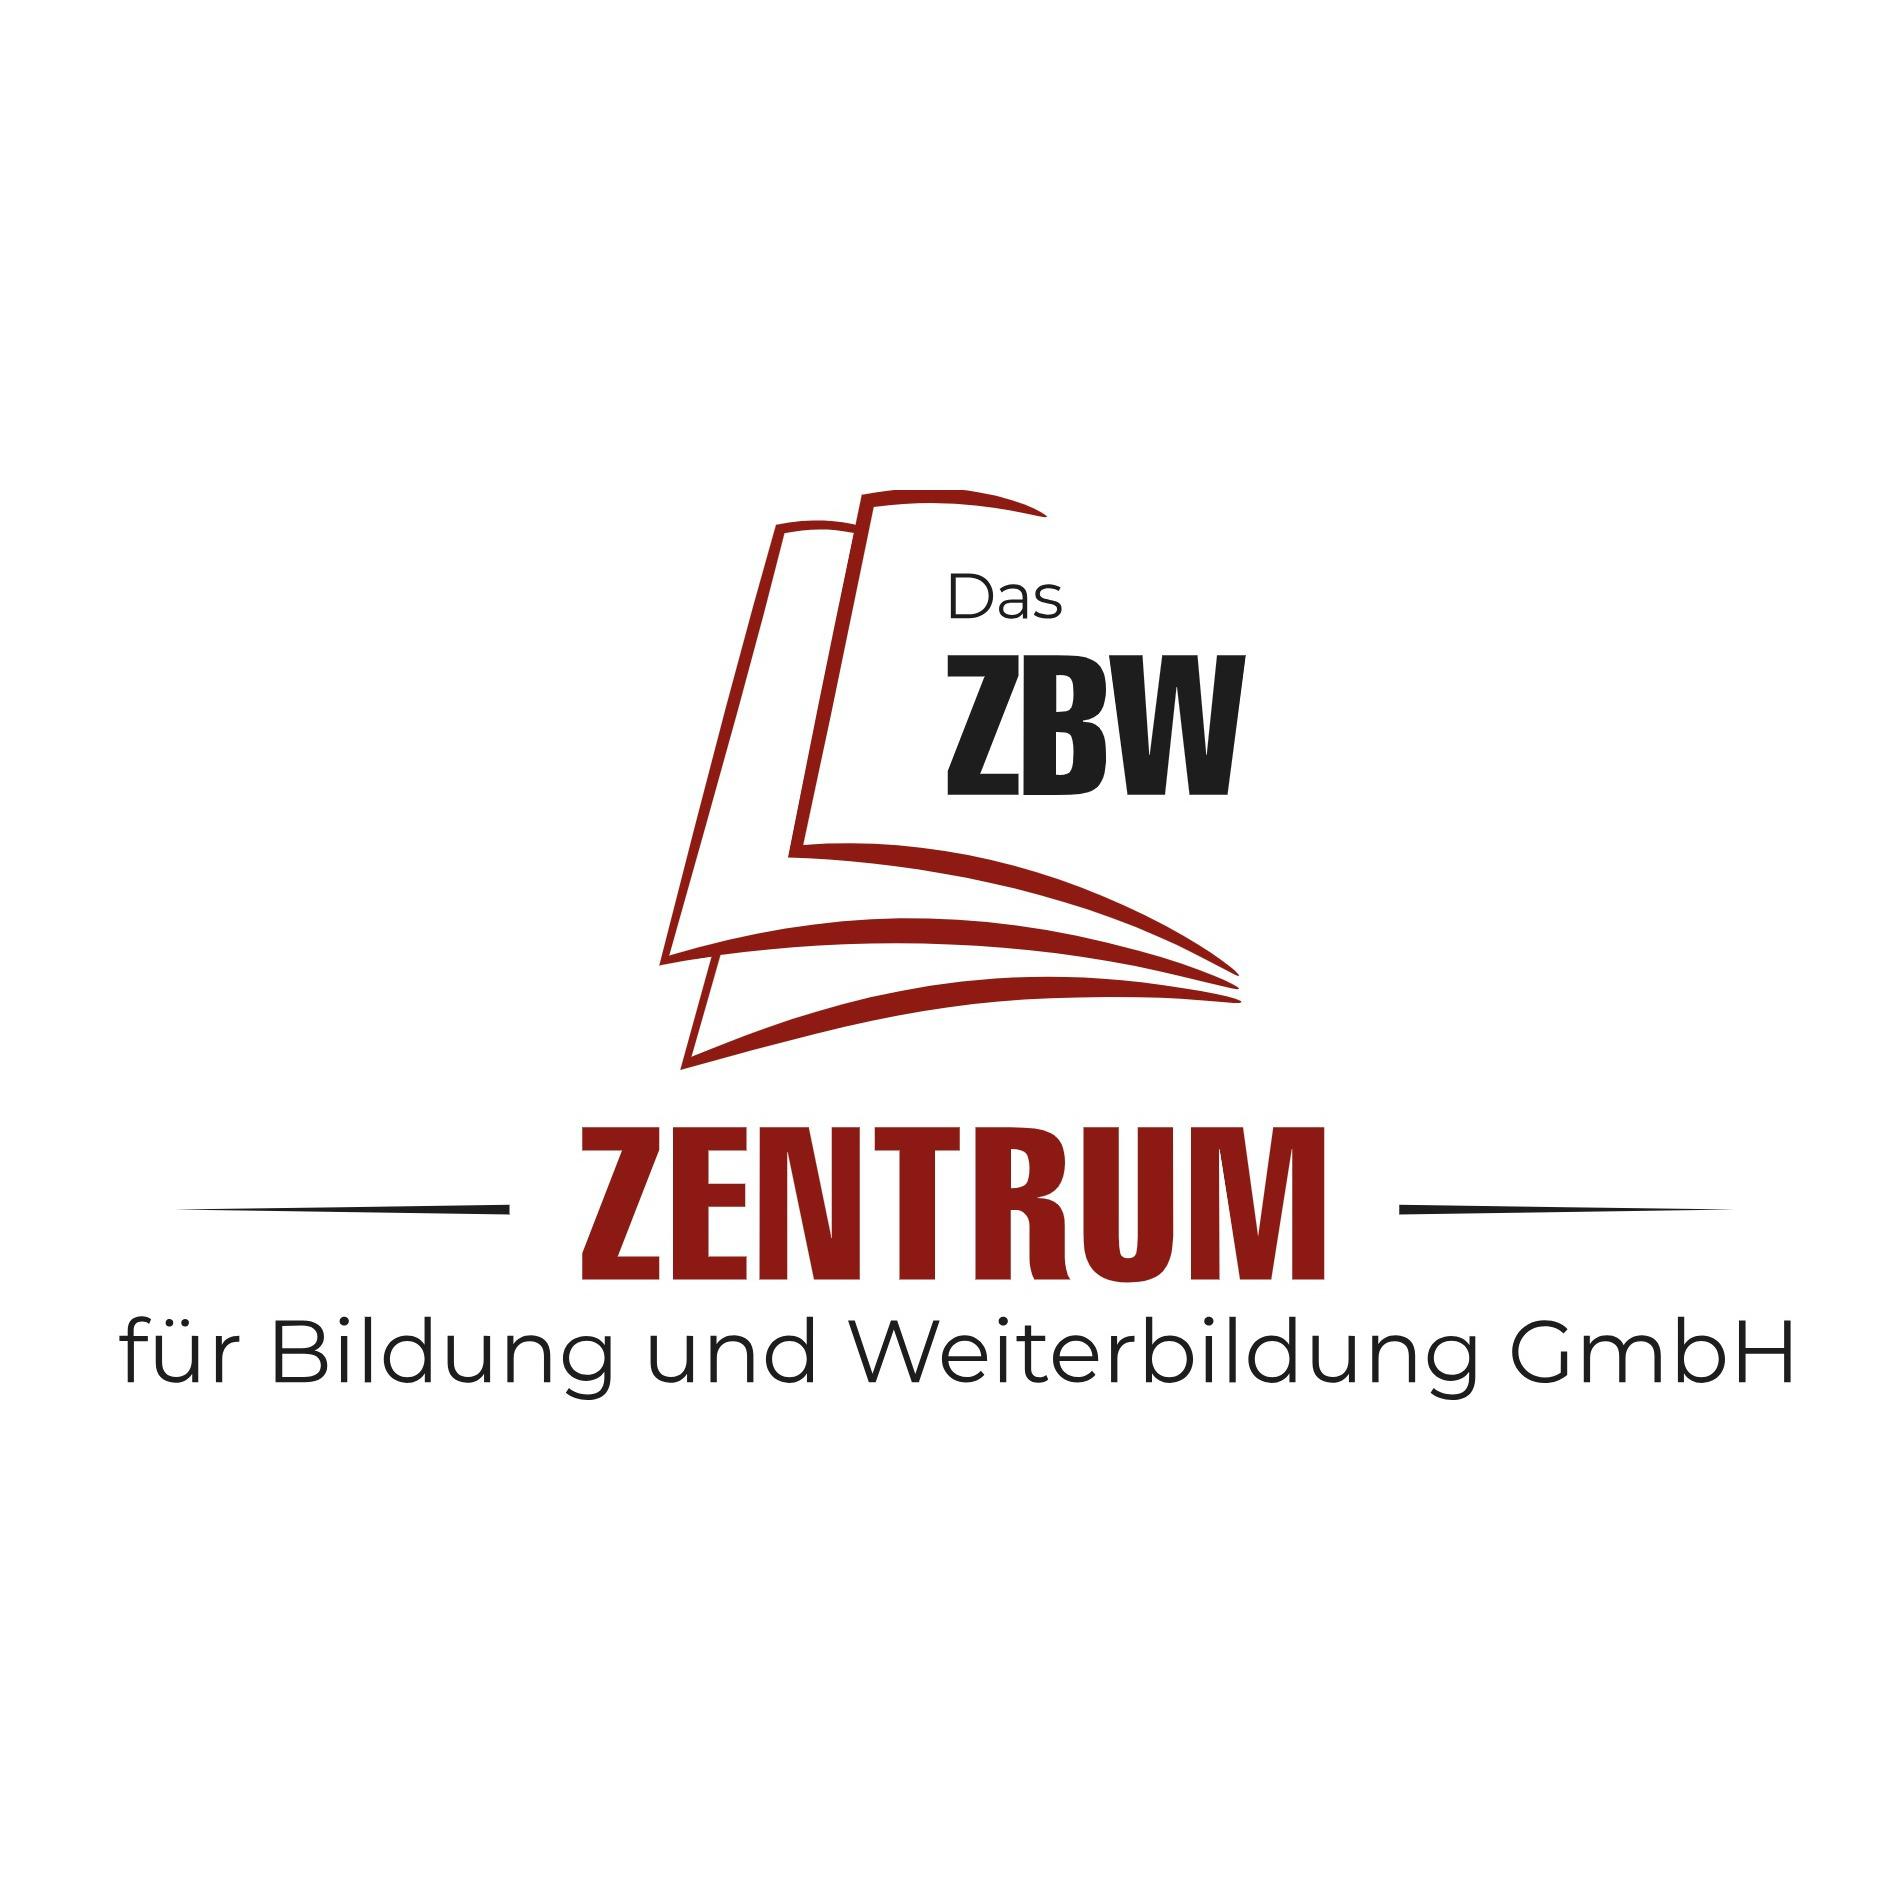 Das ZBW Zentrum für Bildung und Weiterbildung GmbH in Leverkusen - Logo